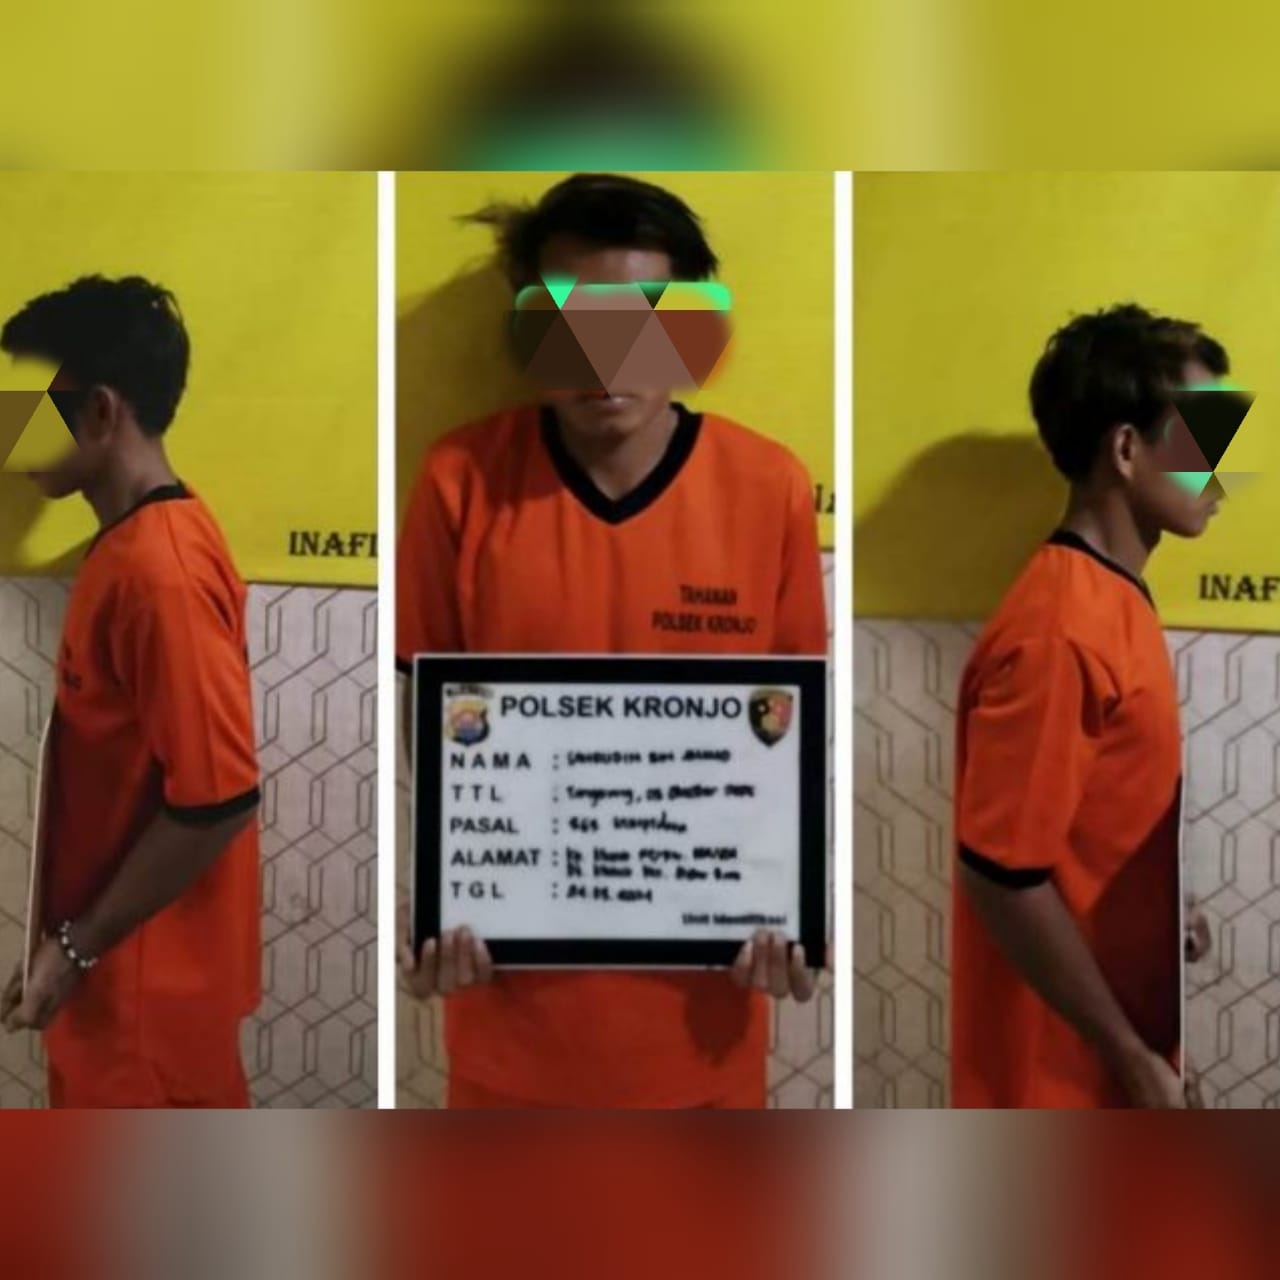 Remaja di Tangerang Ini Bakal Berlebaran di Sel Tahanan Usai Curi Uang Puluhan Juta Rupiah di Sekolah